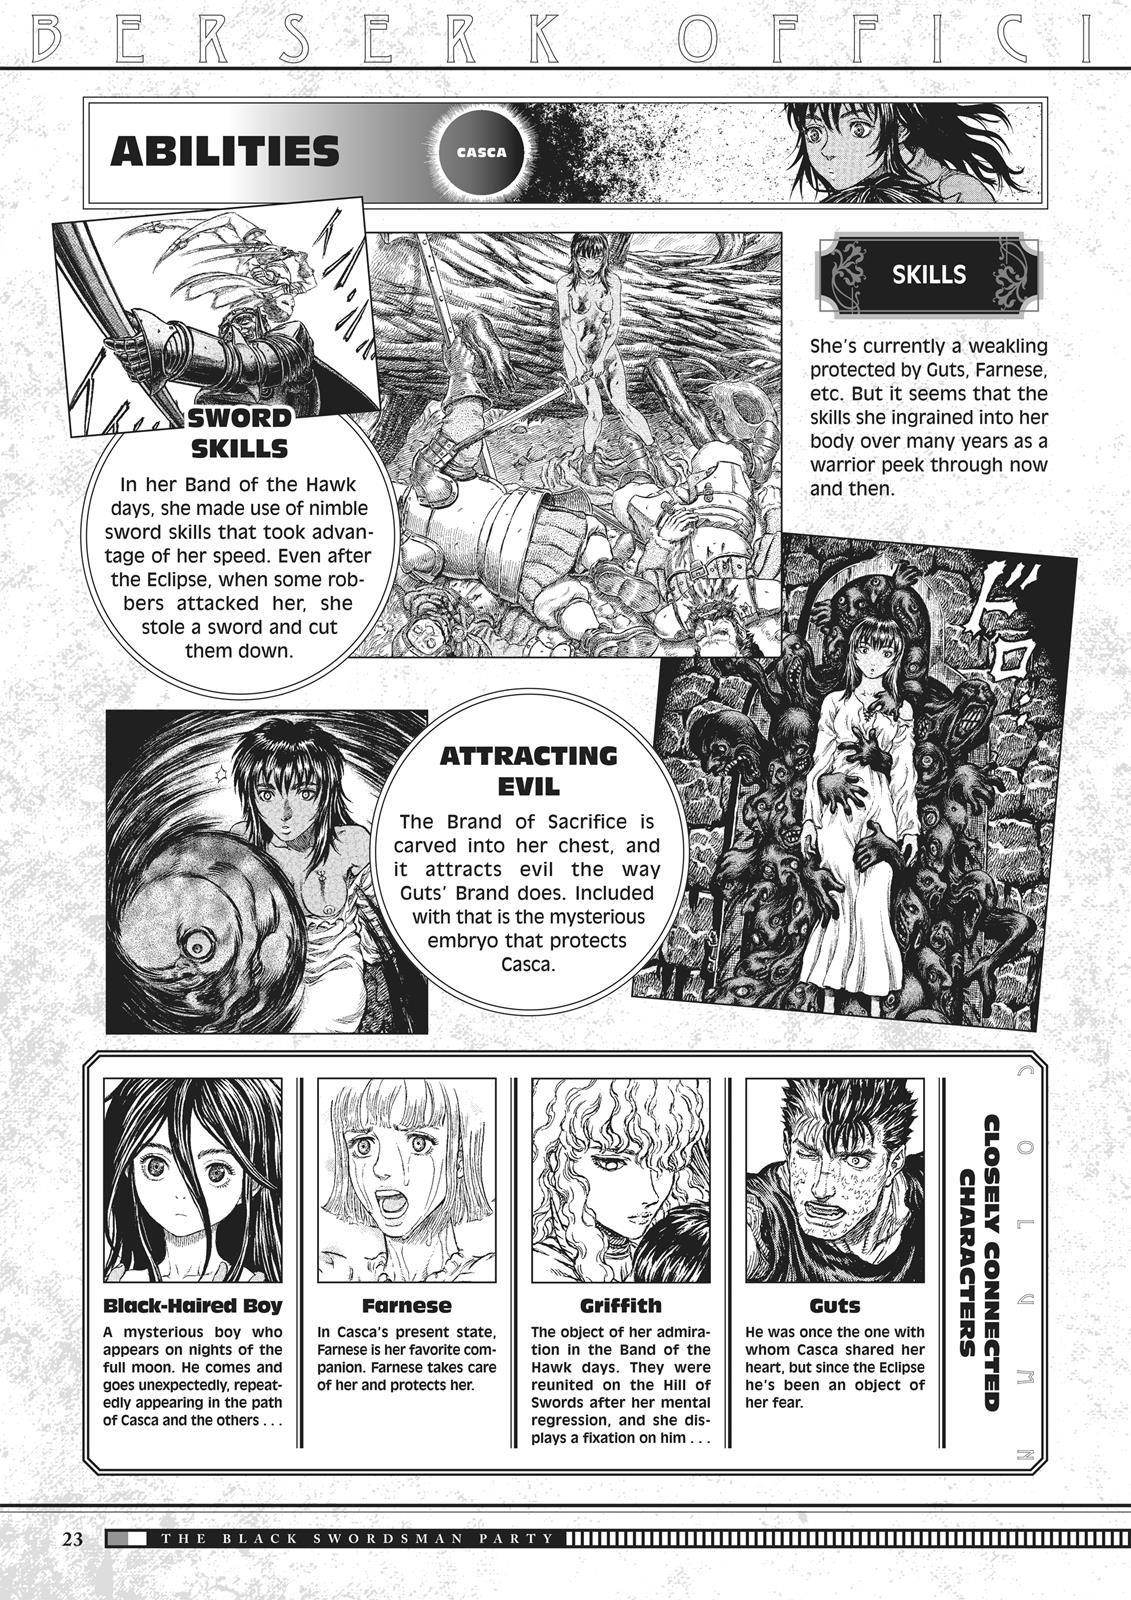 Berserk Manga Chapter 350.5 image 024